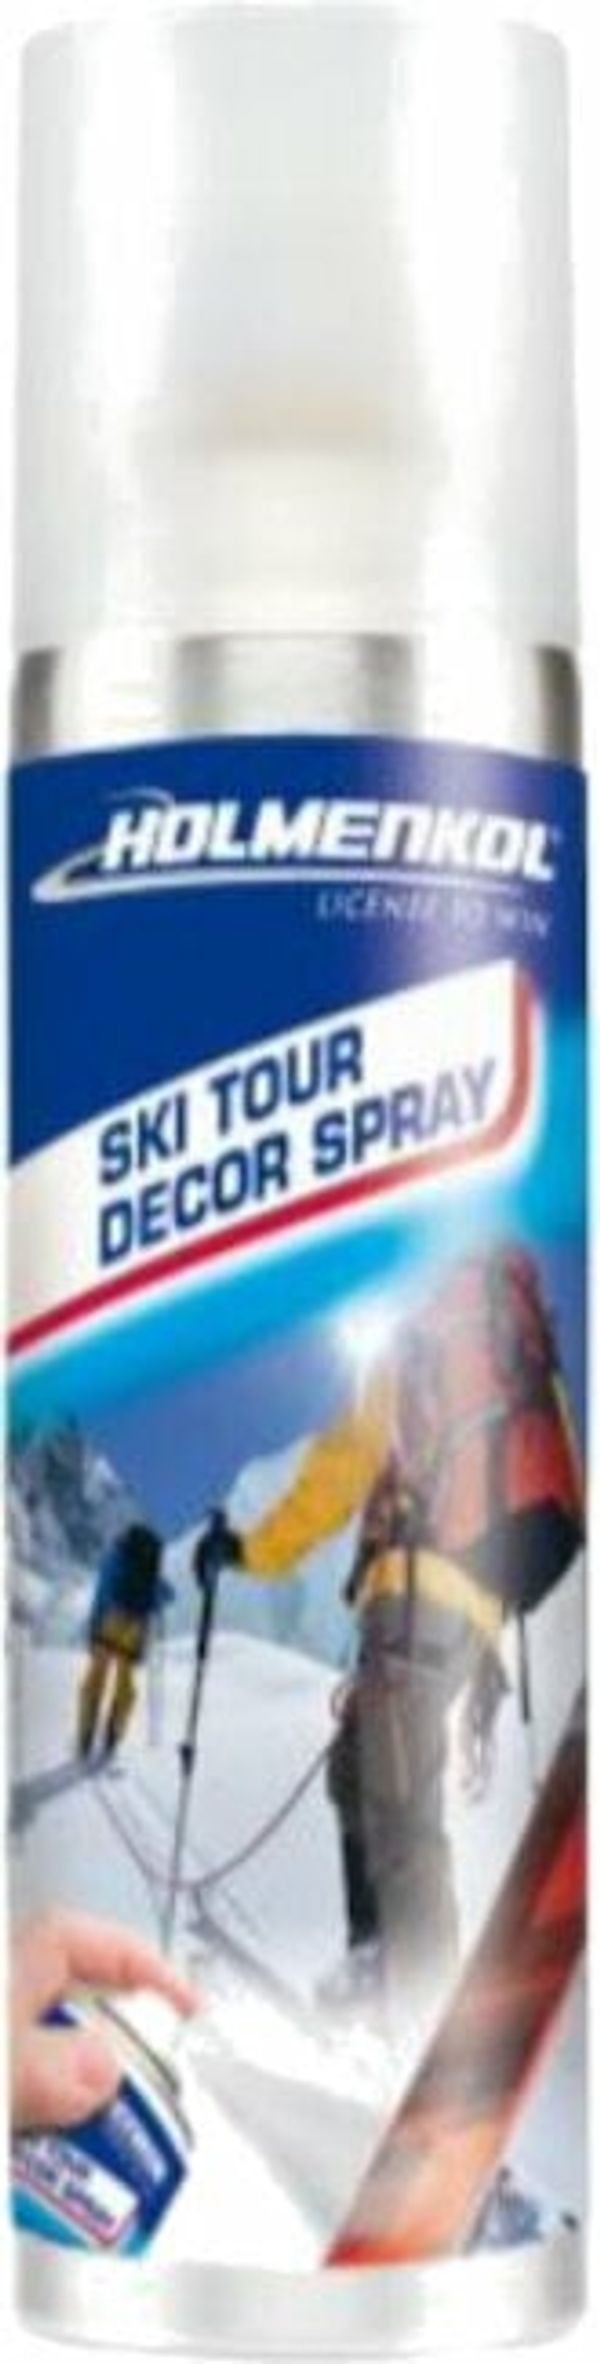 Holmenkol Holmenkol Ski Tour Decor Spray 125ml